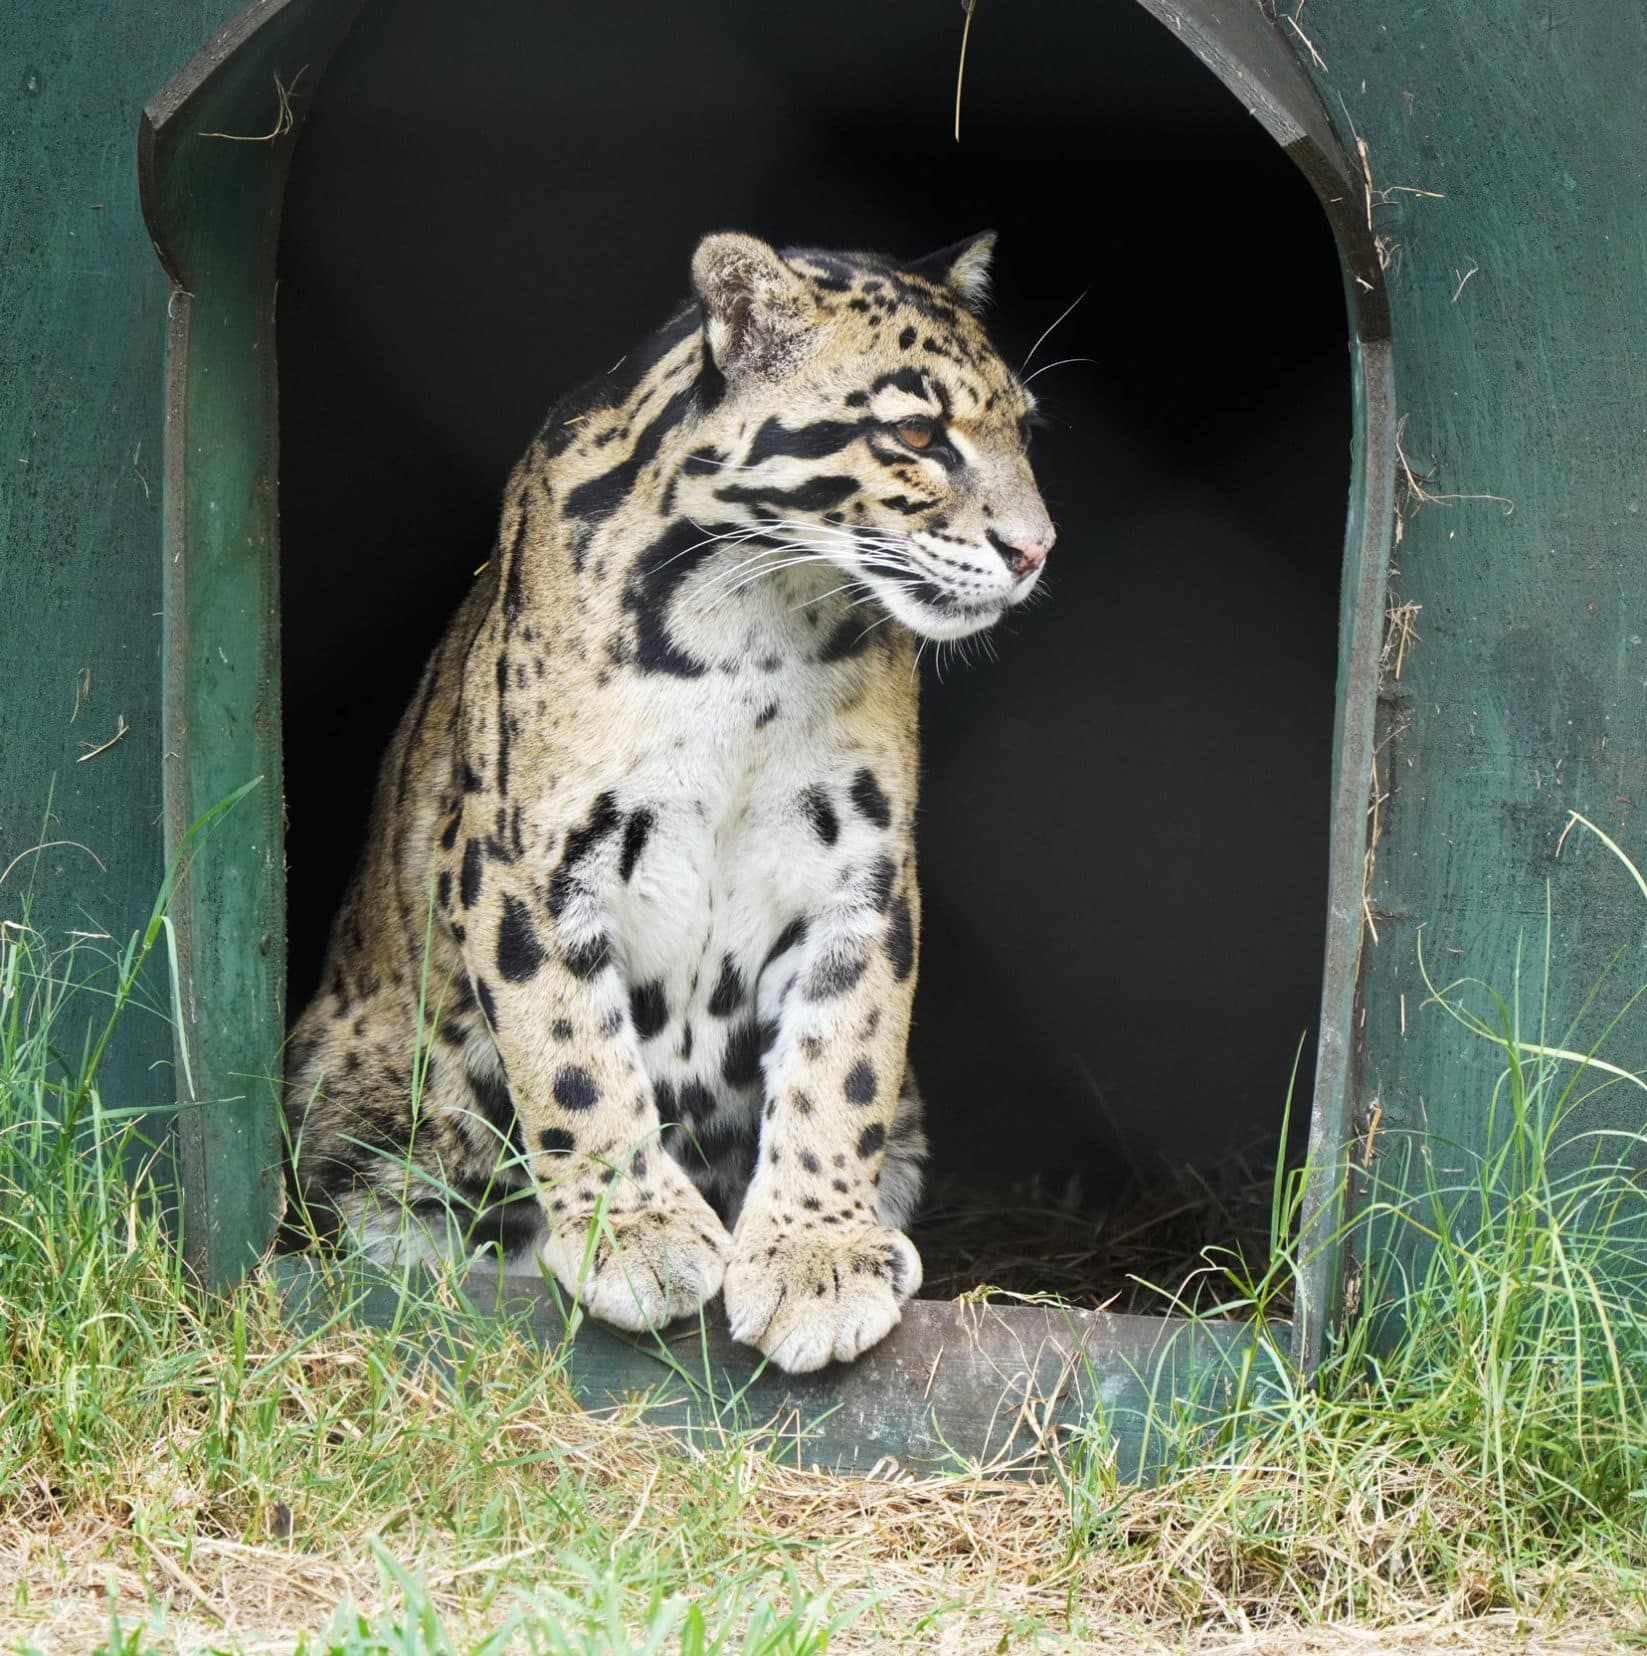 clouded leopard in door of its kennel